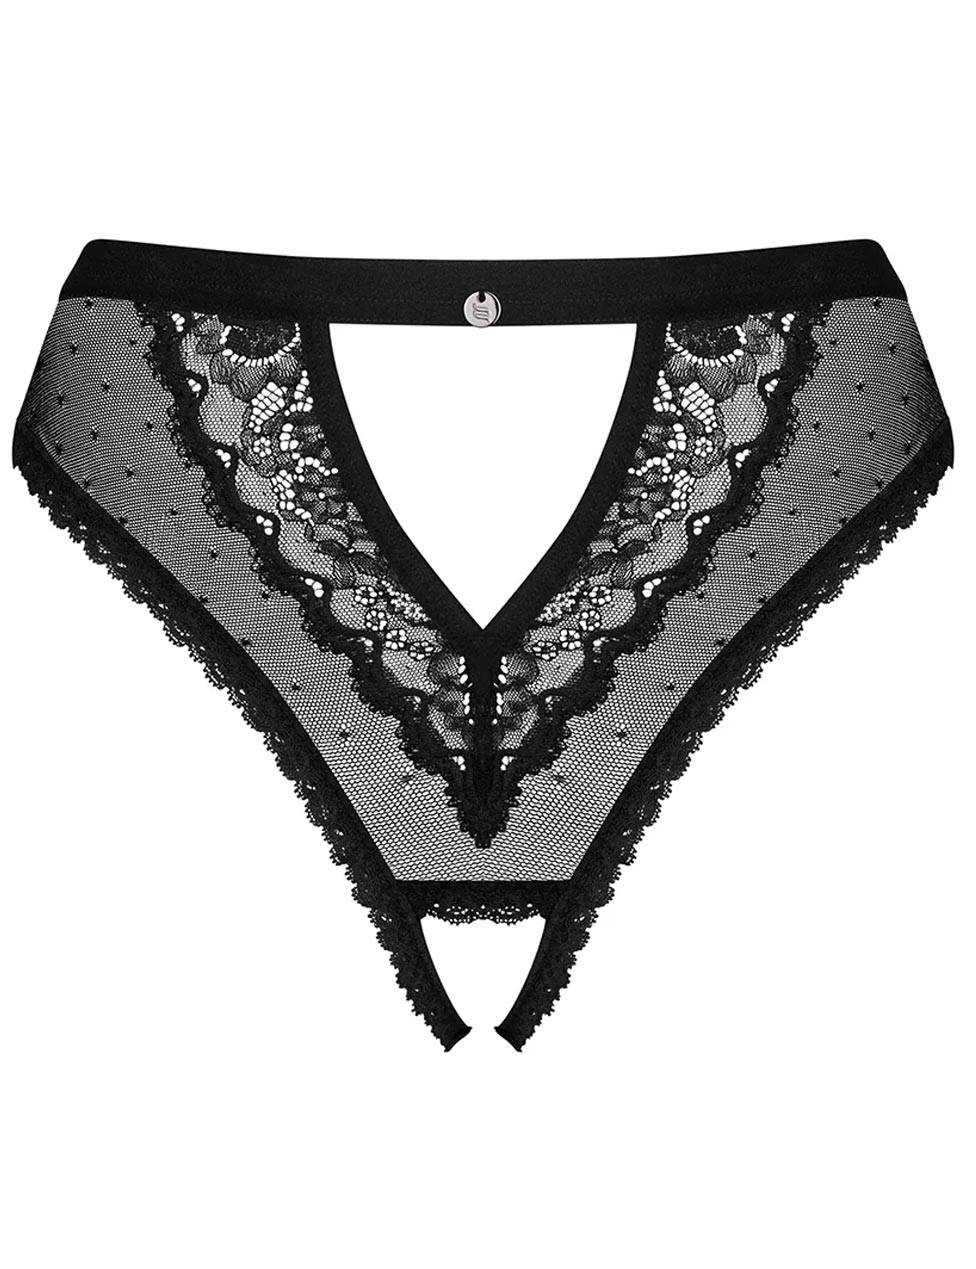 Трусики с доступом Obsessive Mauress Crotchless Panties черный S M купить в интернет магазине